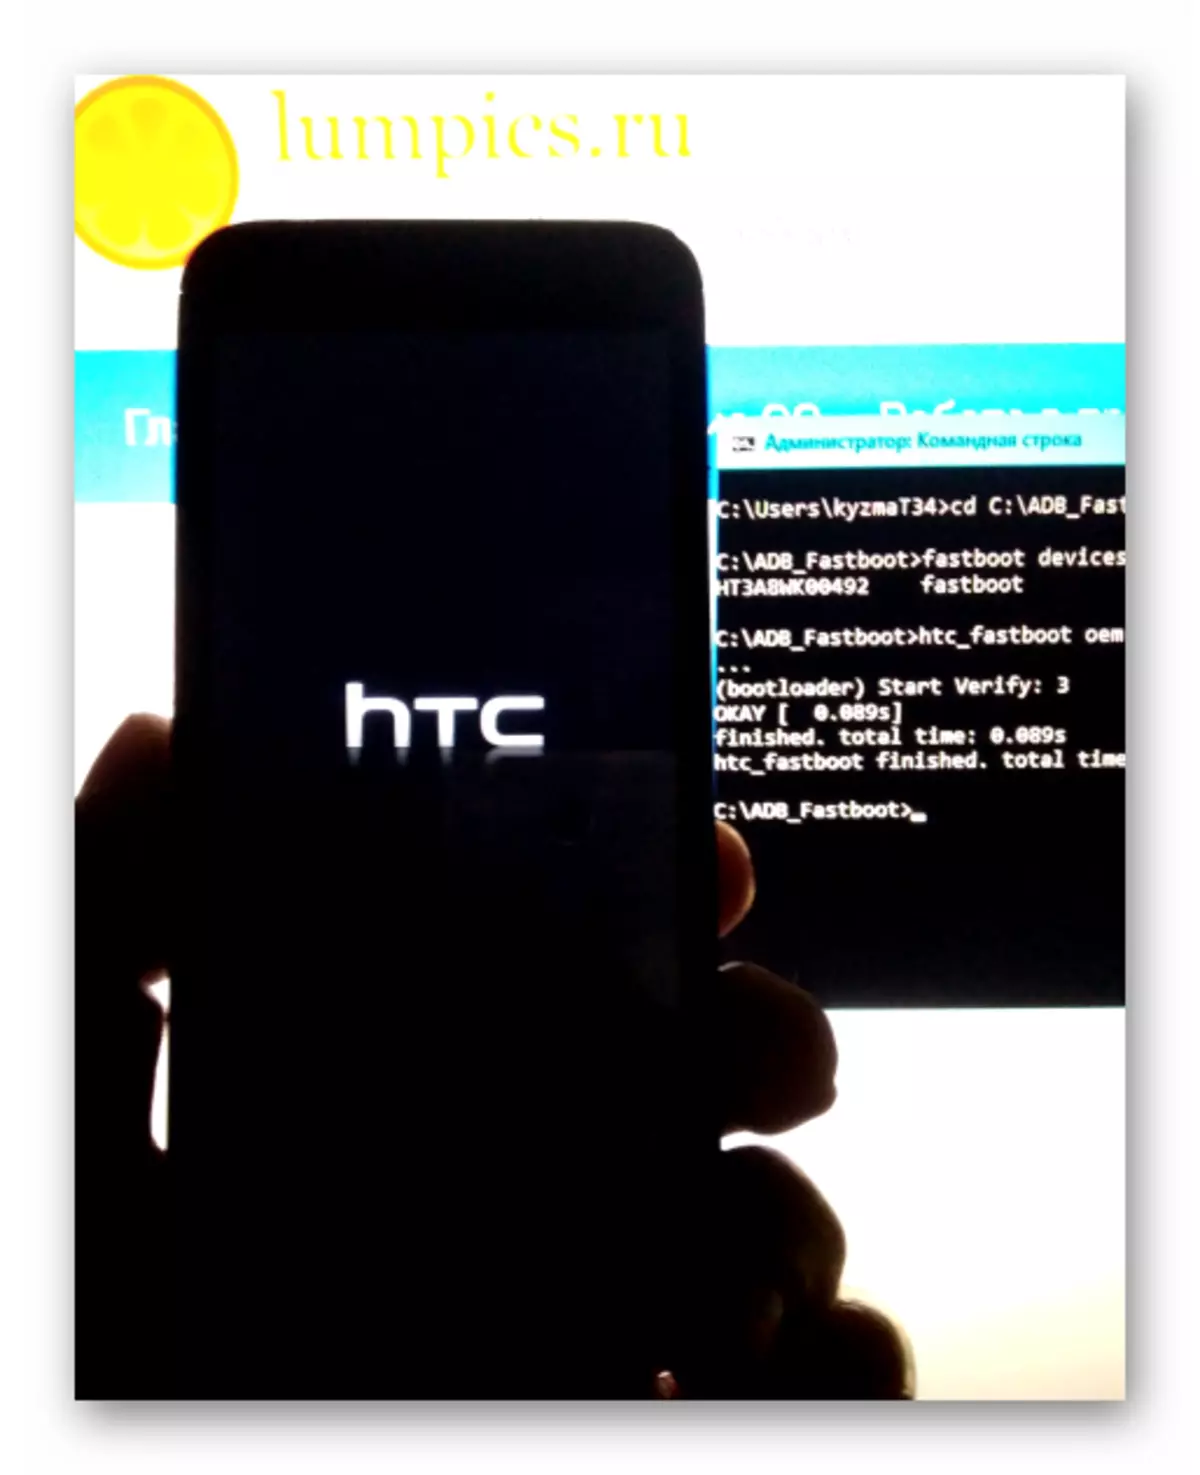 HTC Desire 601 Firmware über Fastboot - Smartphone in den gewünschten Modus übersetzt - RUU